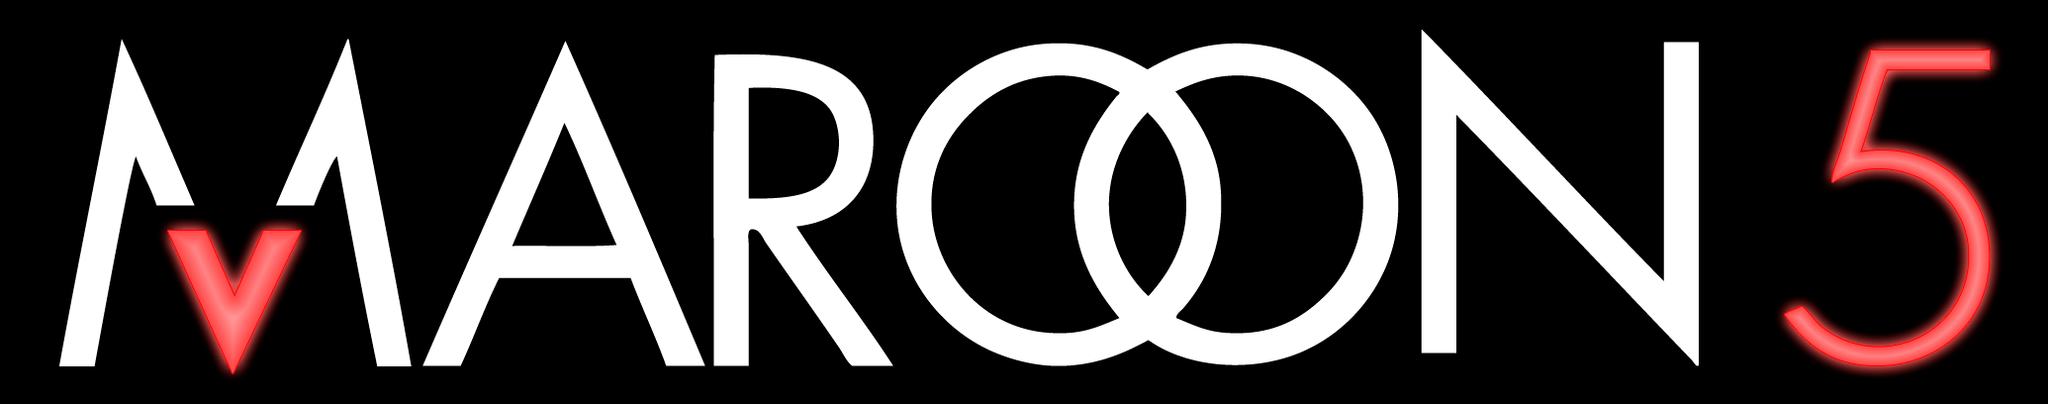 Maroon 5 Logo - Maroon 5 Logos